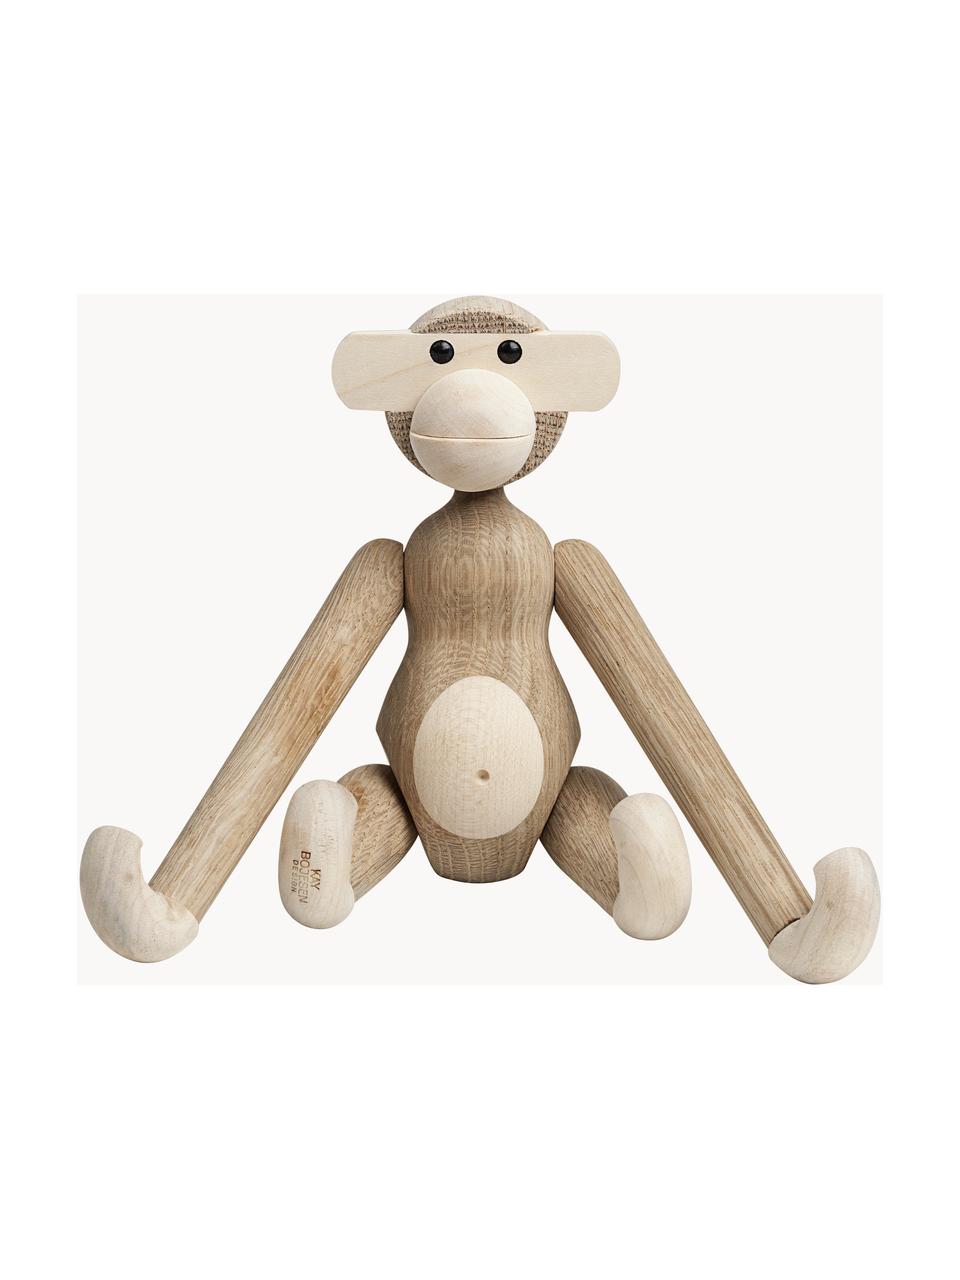 Handgefertigtes Deko-Objekt Monkey aus Eichenholz, H 19 cm, Eichenholz, Ahornholz, lackiert, FSC-zertifiziert, Eichenholz, Ahornholz, B 20 x H 19 cm